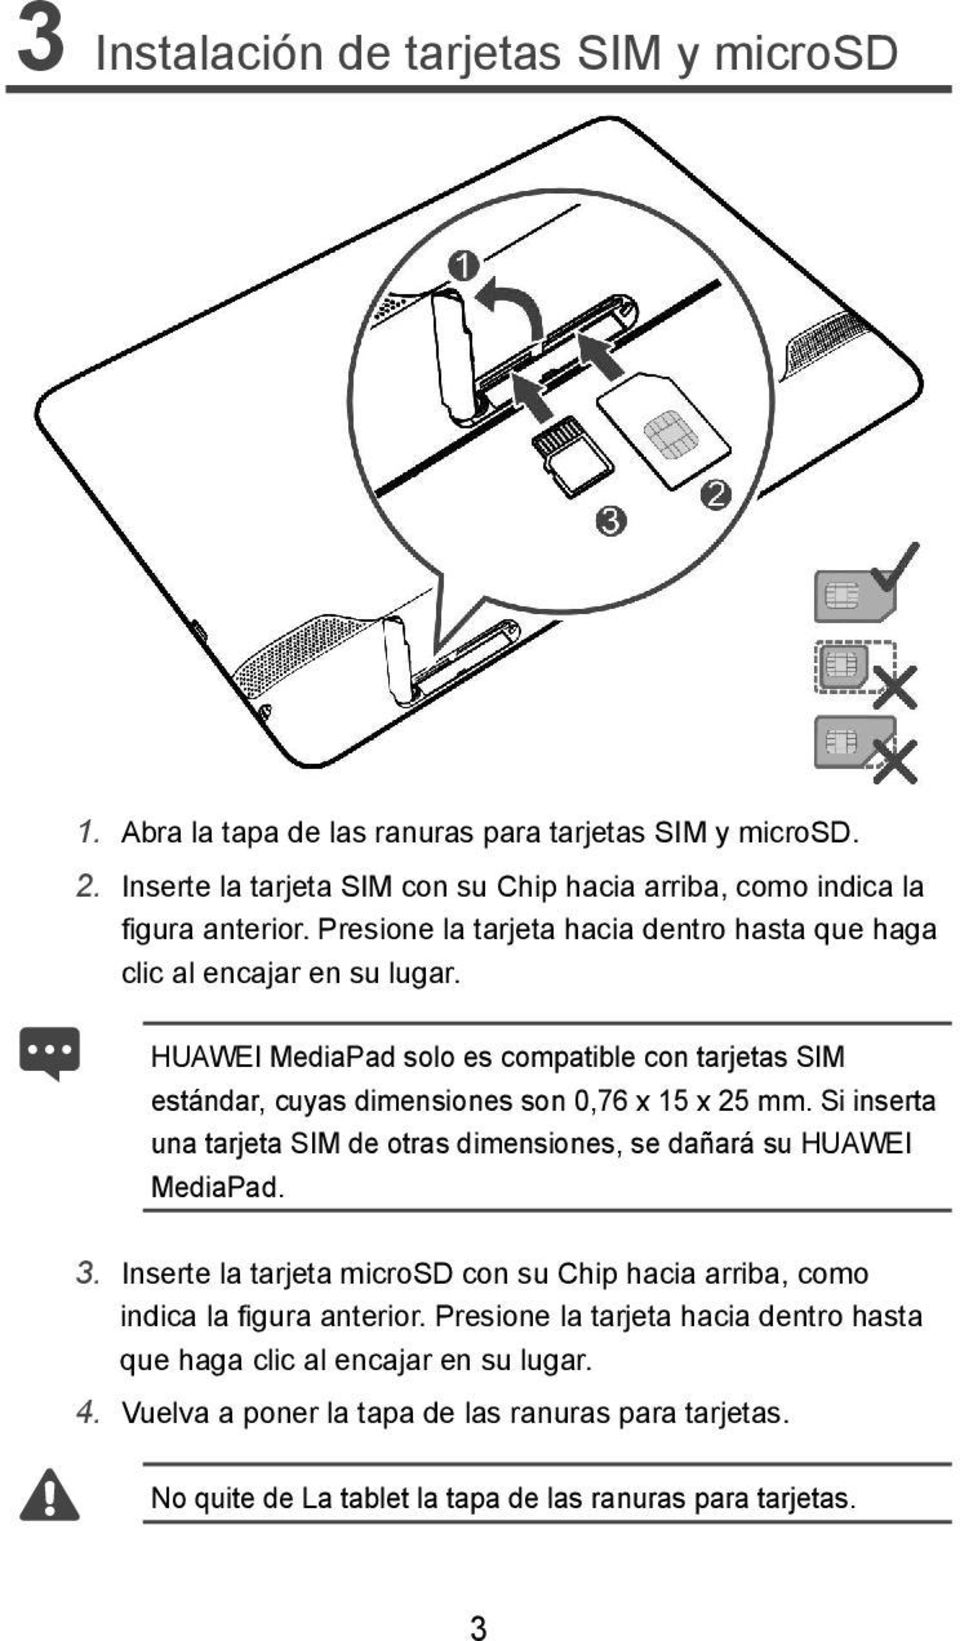 HUAWEI MediaPad solo es compatible con tarjetas SIM estándar, cuyas dimensiones son 0,76 x 15 x 25 mm. Si inserta una tarjeta SIM de otras dimensiones, se dañará su HUAWEI MediaPad.